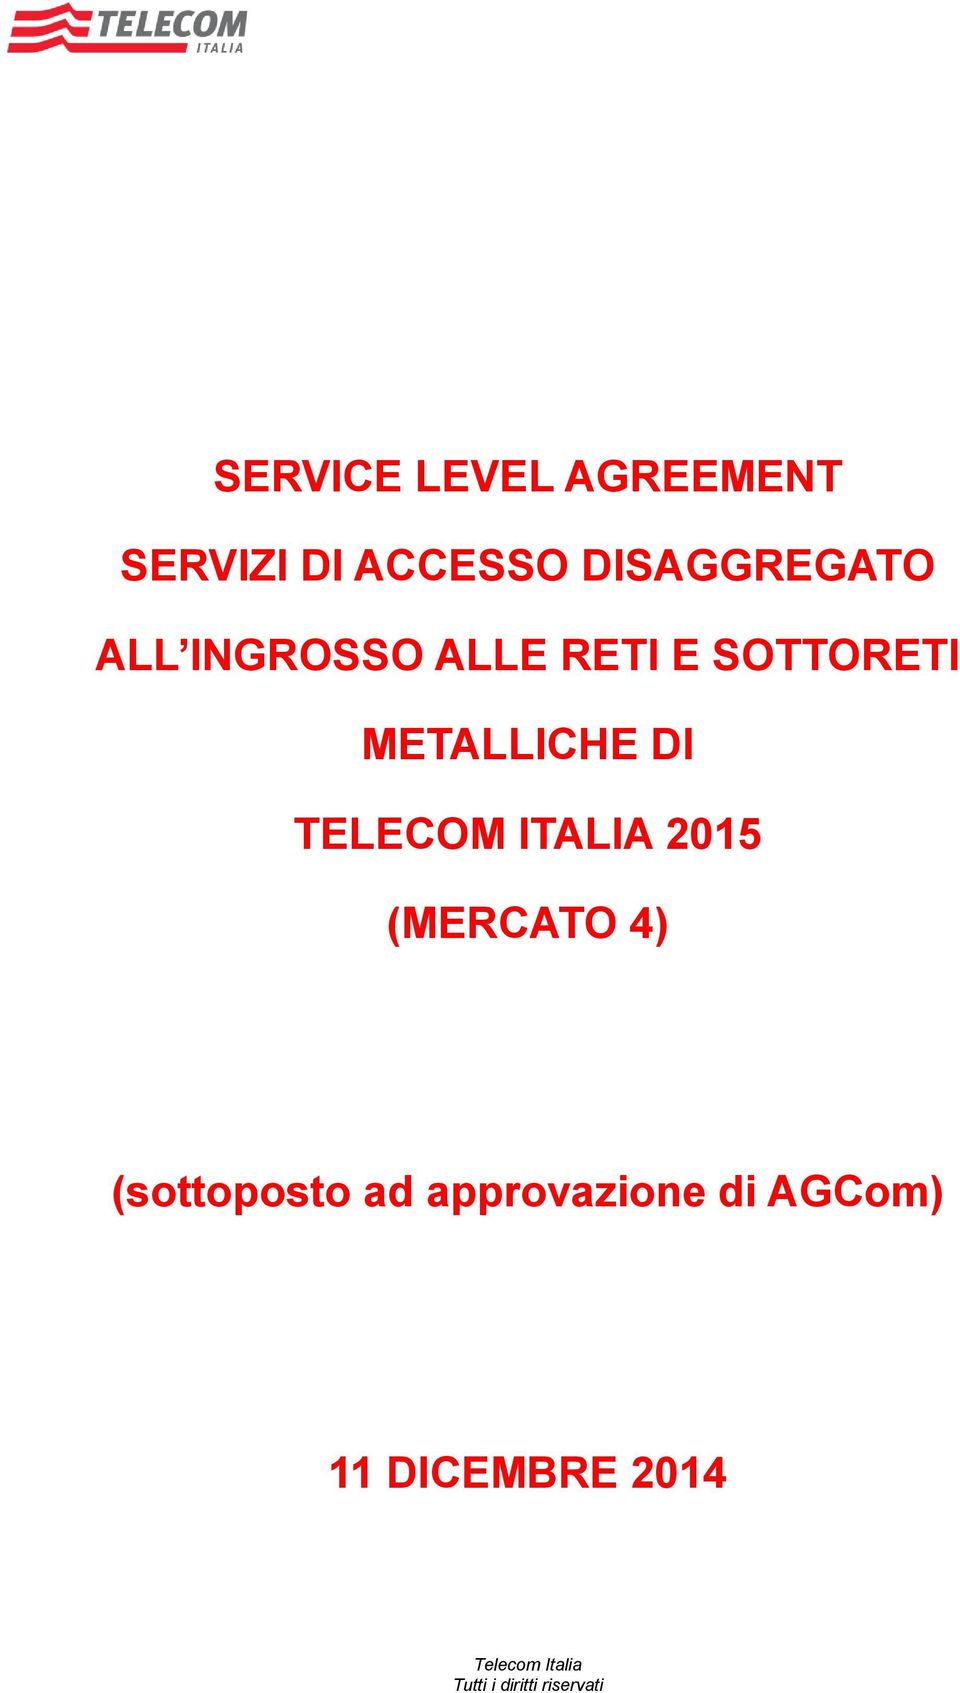 METALLICHE DI TELECOM ITALIA 2015 (MERCATO 4)